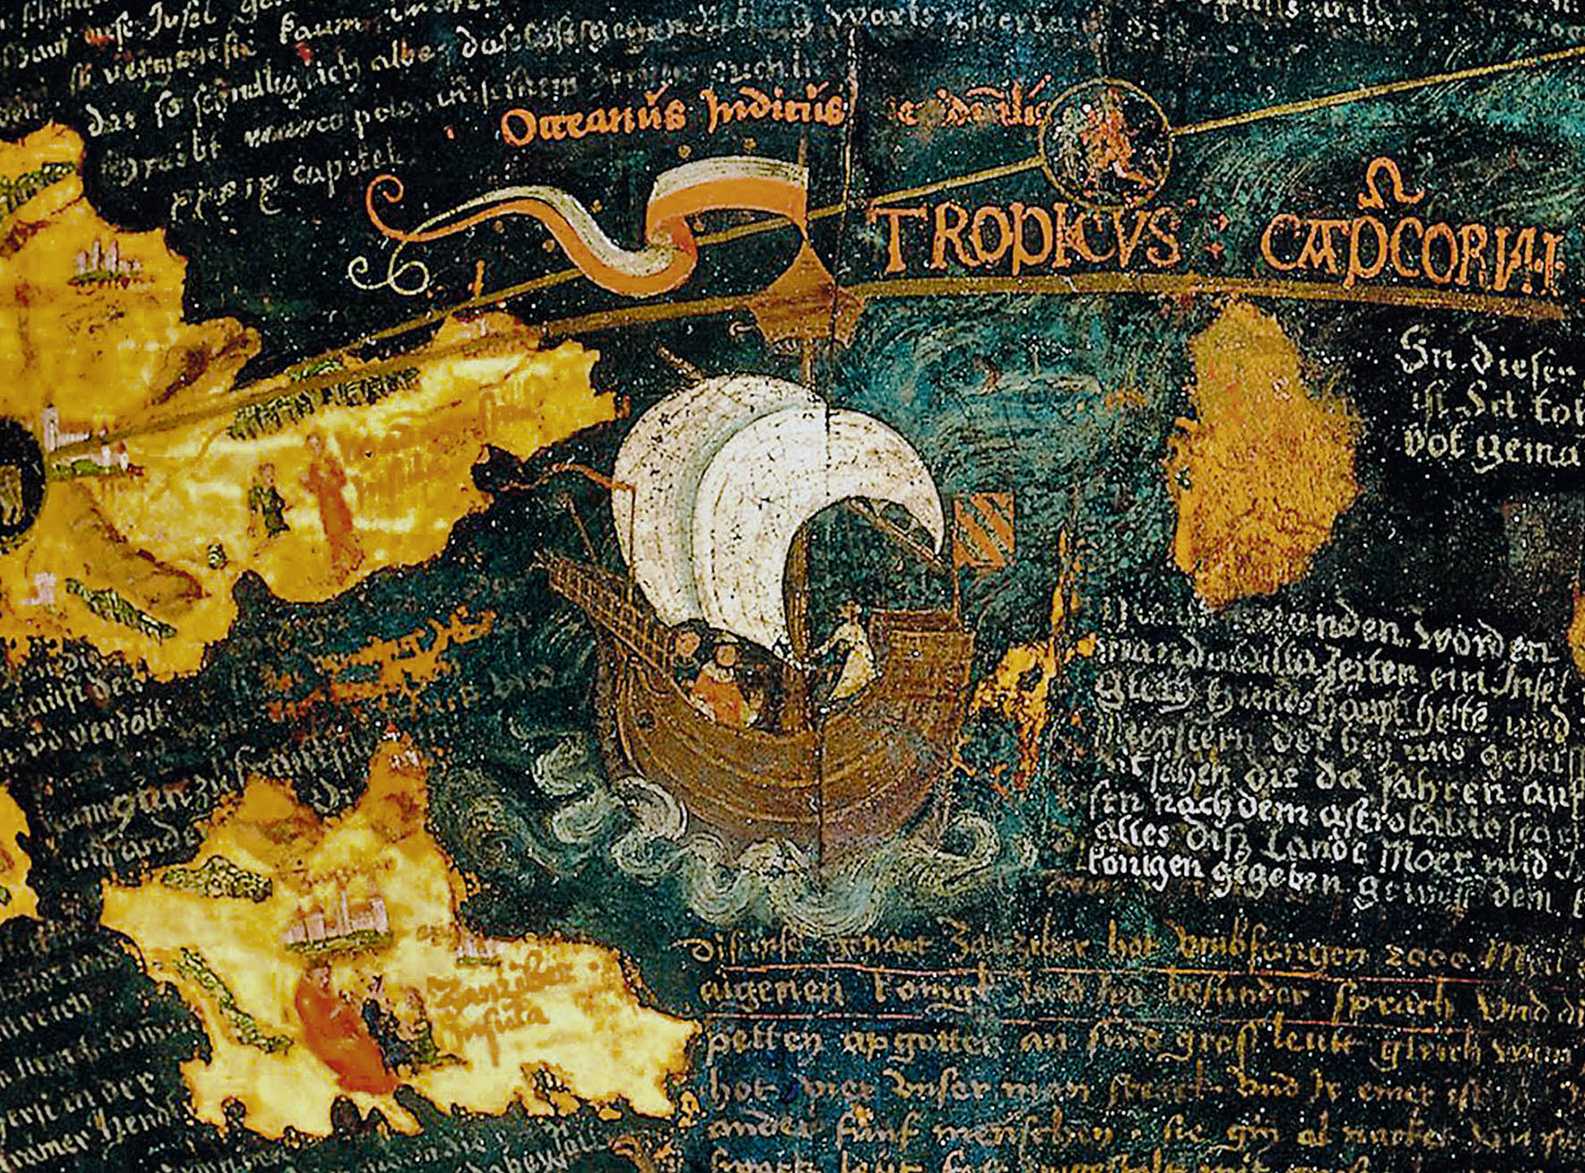 Die Abbildung zeigt eine Detailaufnahme des Behaim Globus. Zu sehen ist ein historisches Schiff aus dem Europa der Frühen Neuzeit, das vor Inseln des Indischen Ozeans segelt.